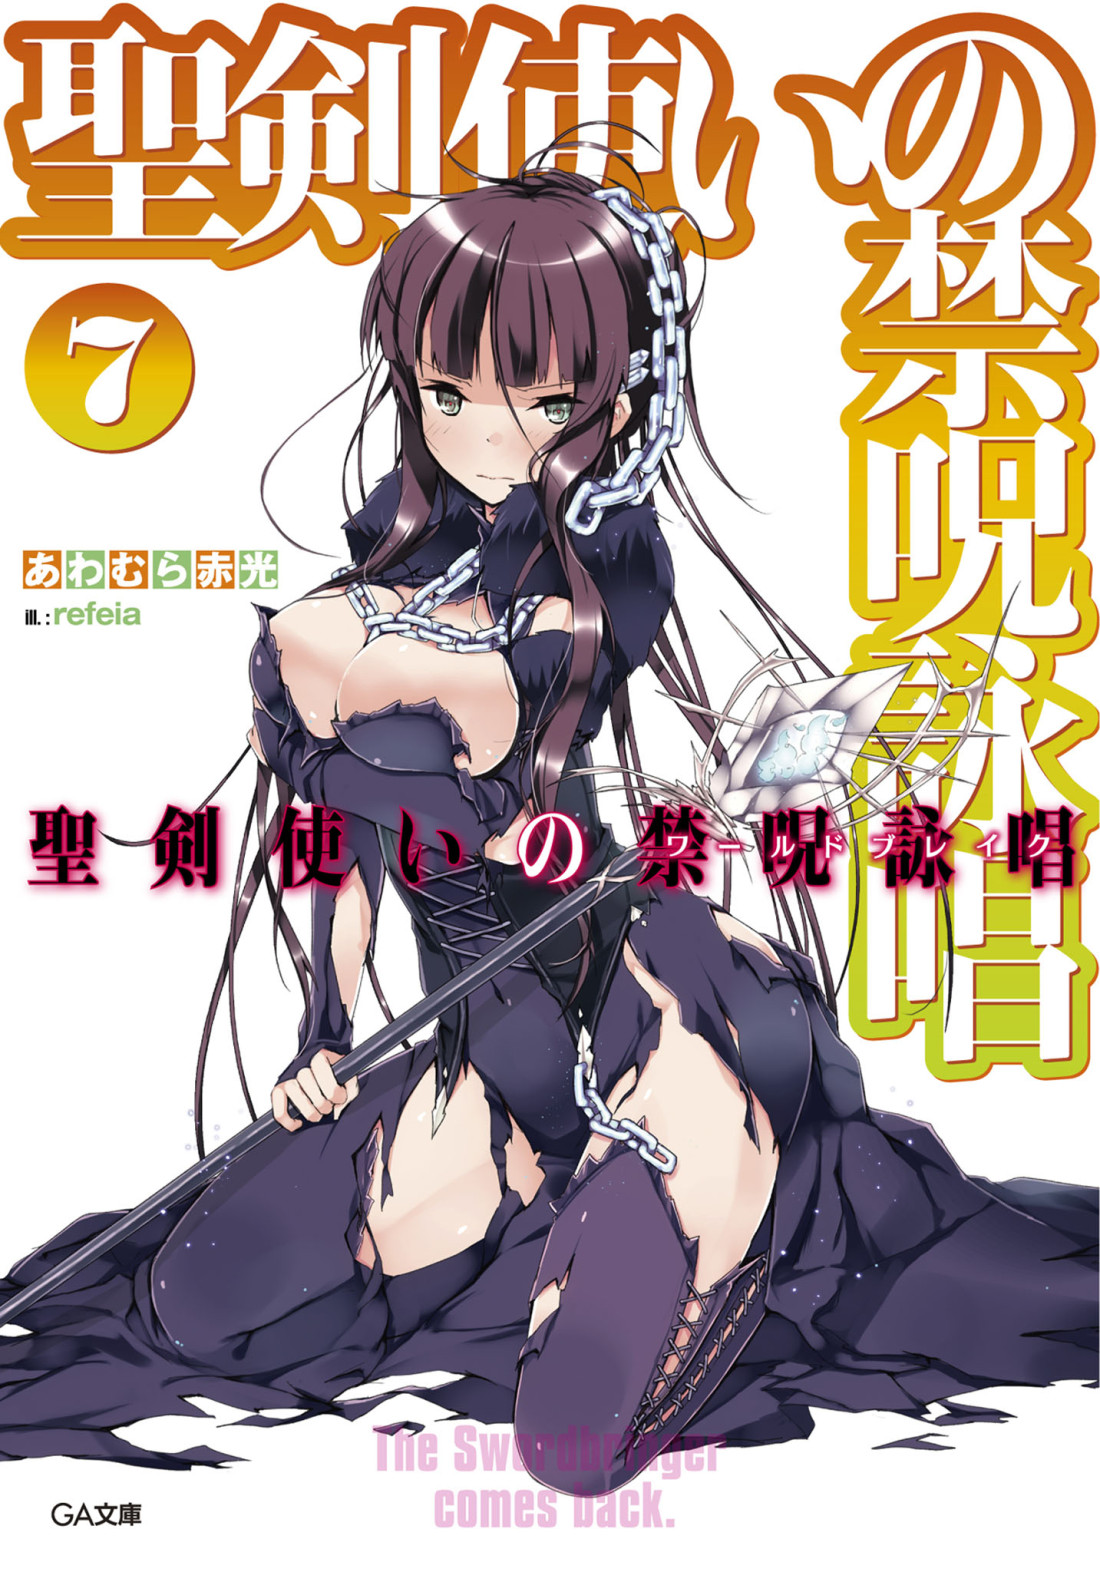 Seiken Tsukai no World Break Light Novel Volume 7 | Seiken Tsukai 